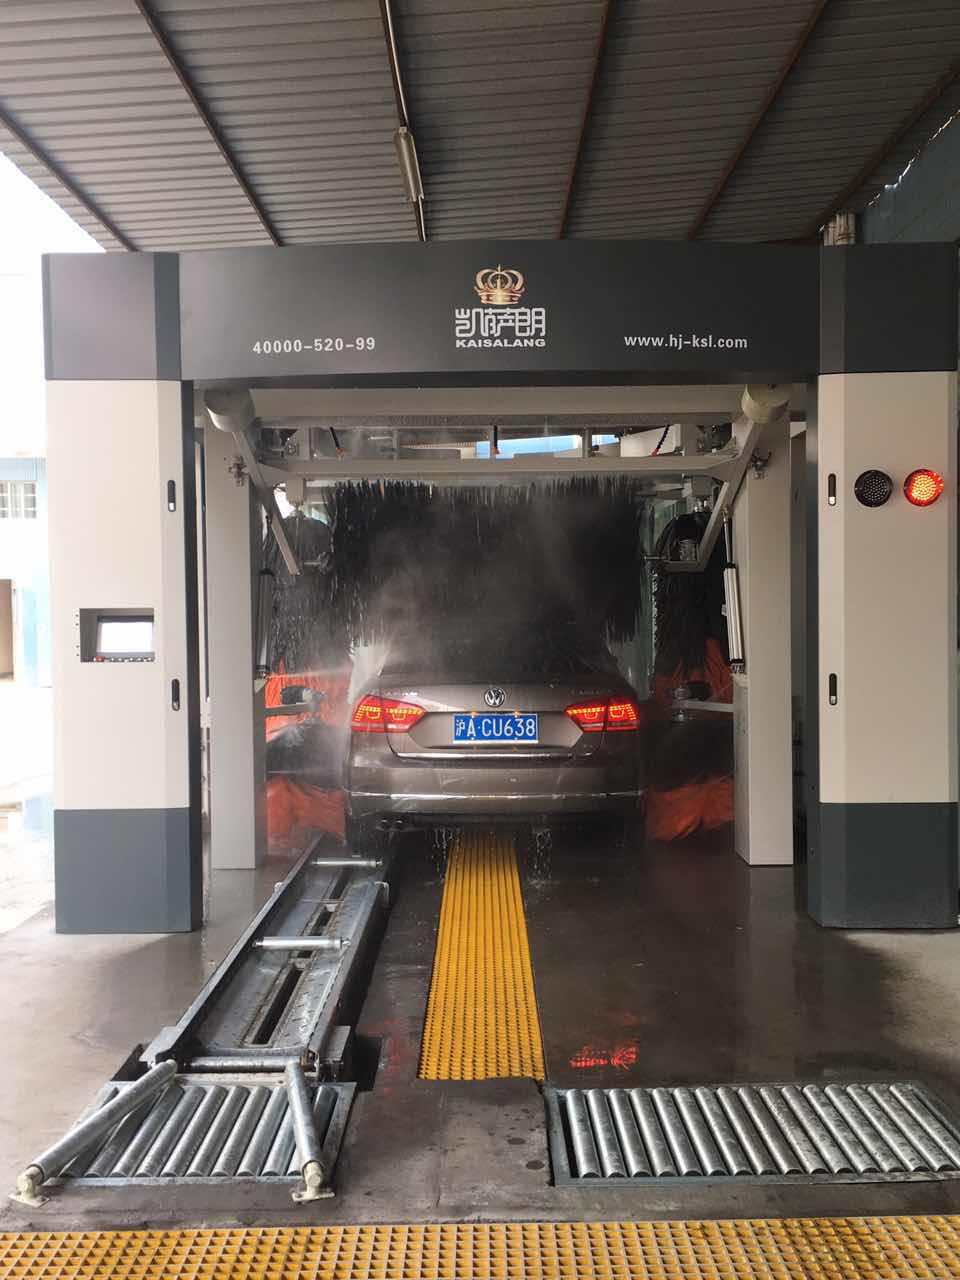 洗车机厂家 上海洗车机厂家 凯萨朗洗车机 节能环保洗车机性能好